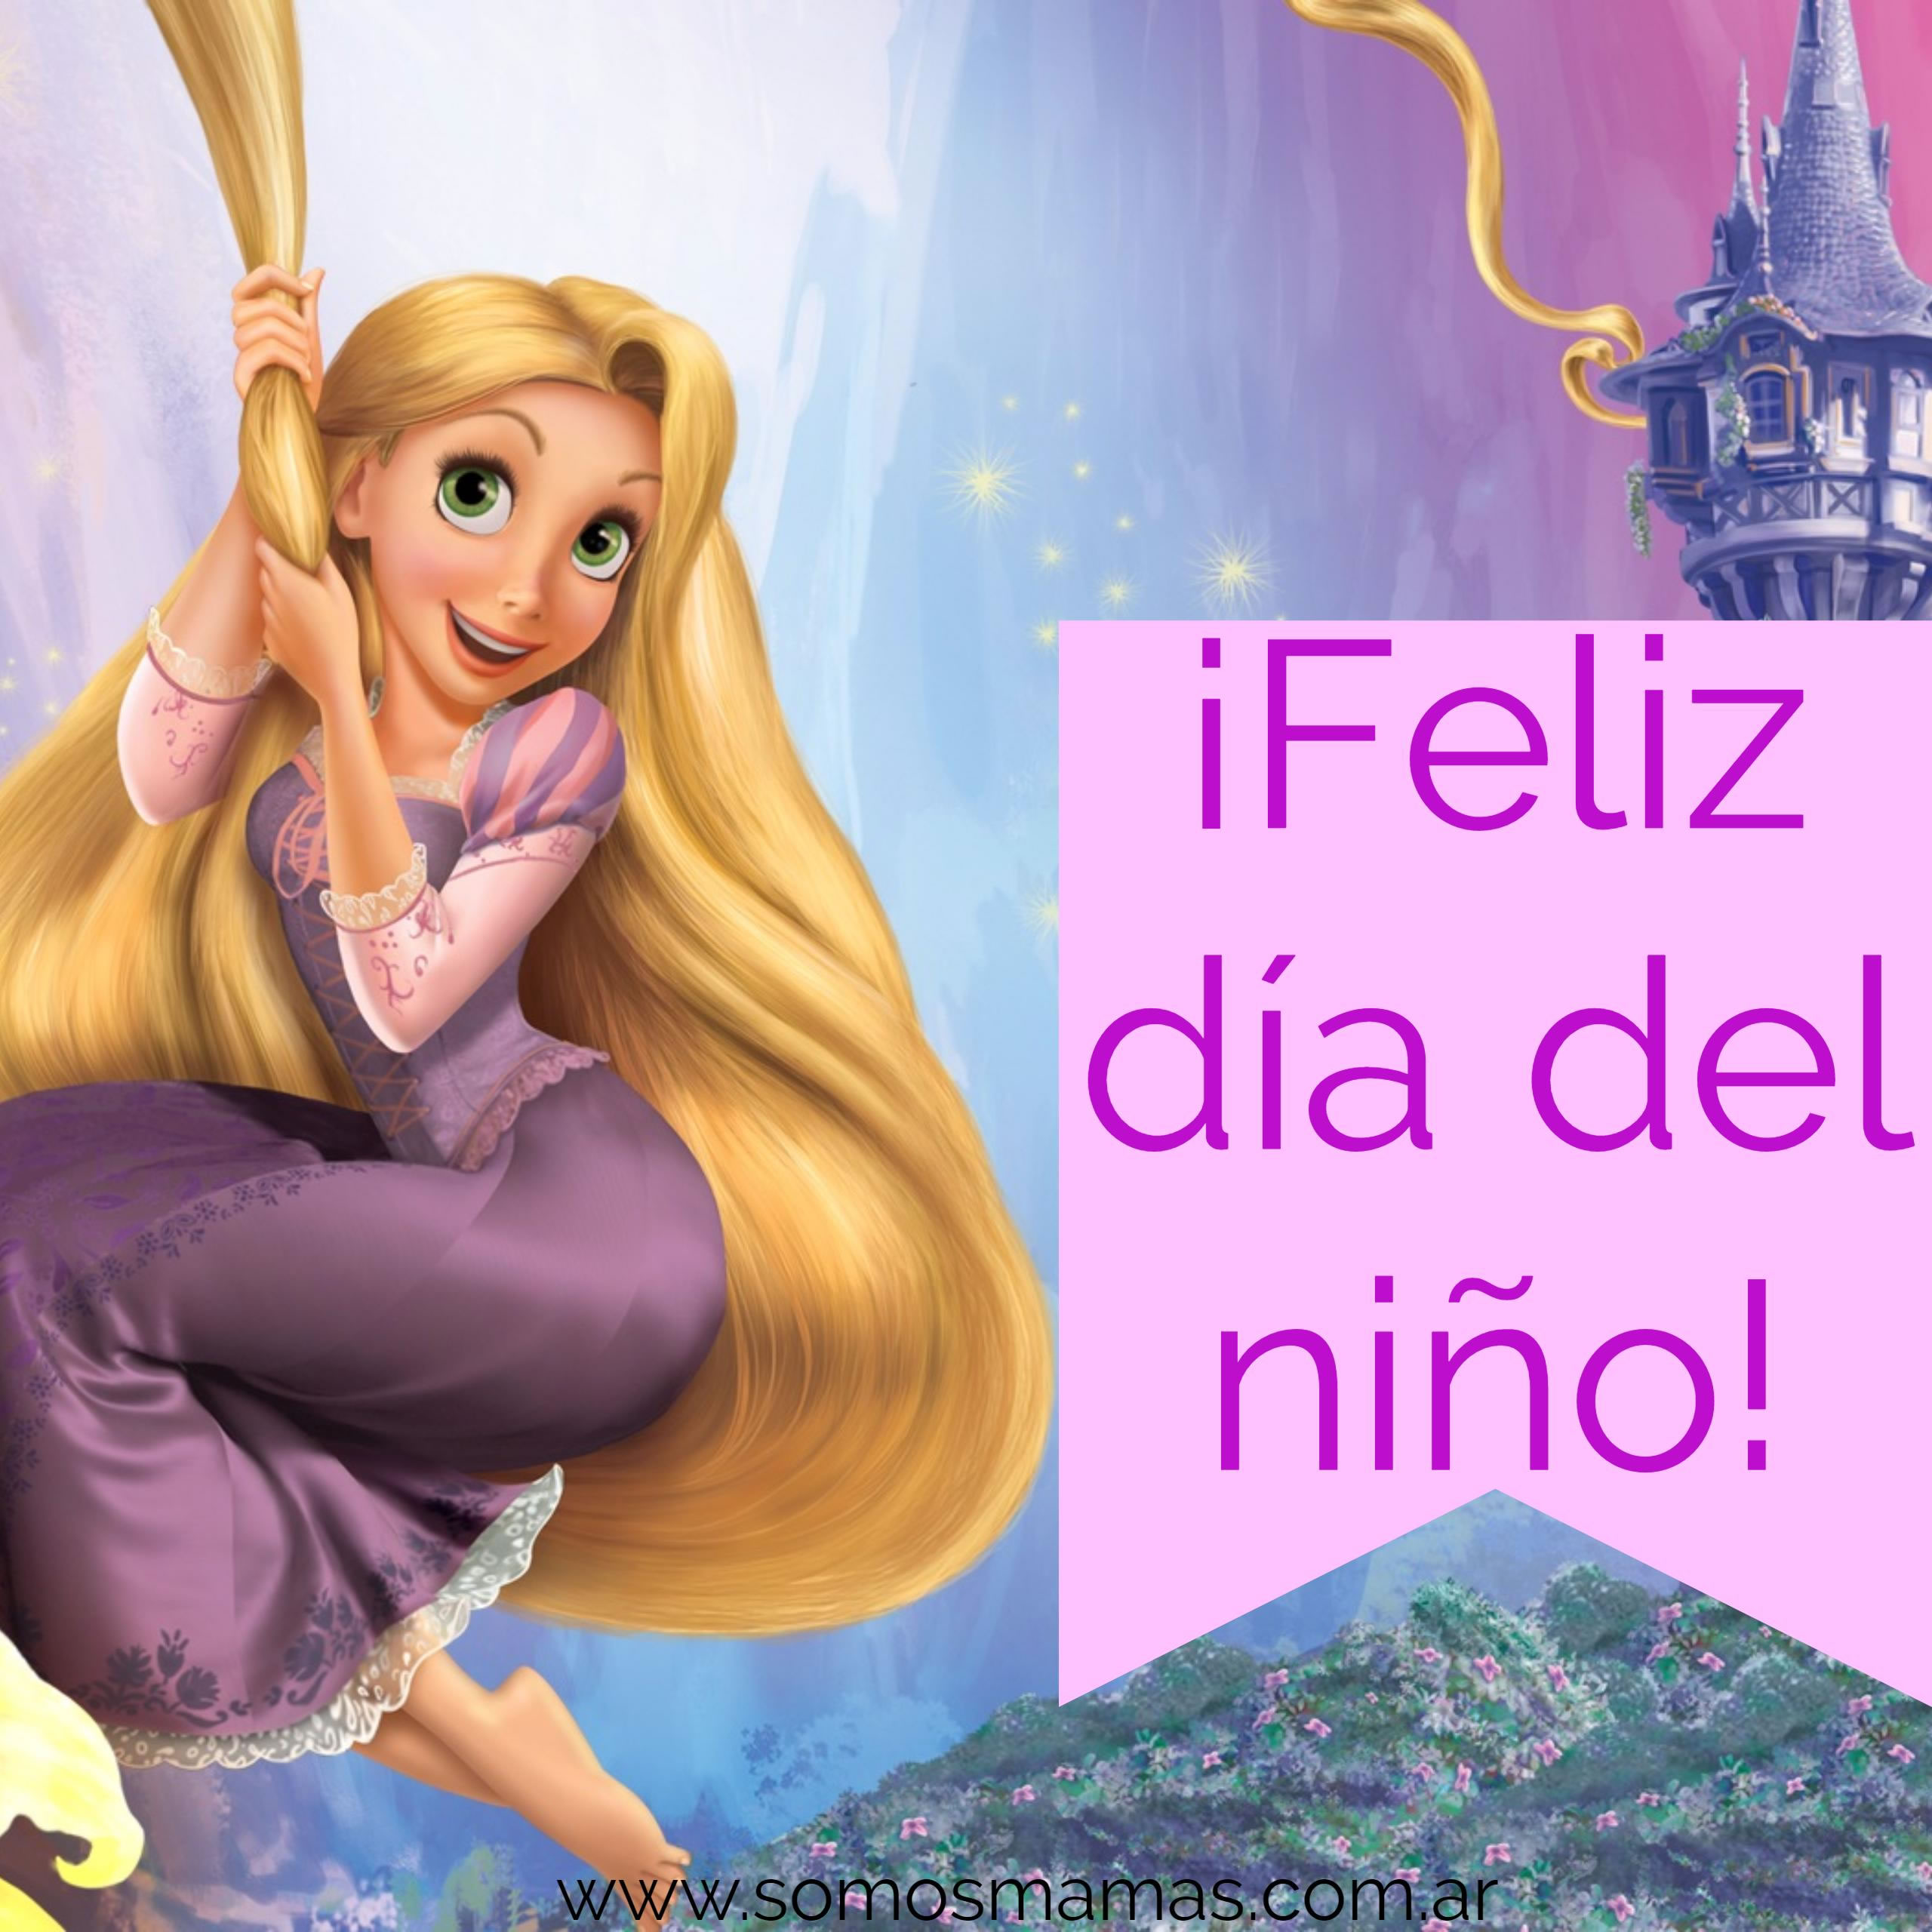 ¡Feliz día del niño te desea Rapunzel!